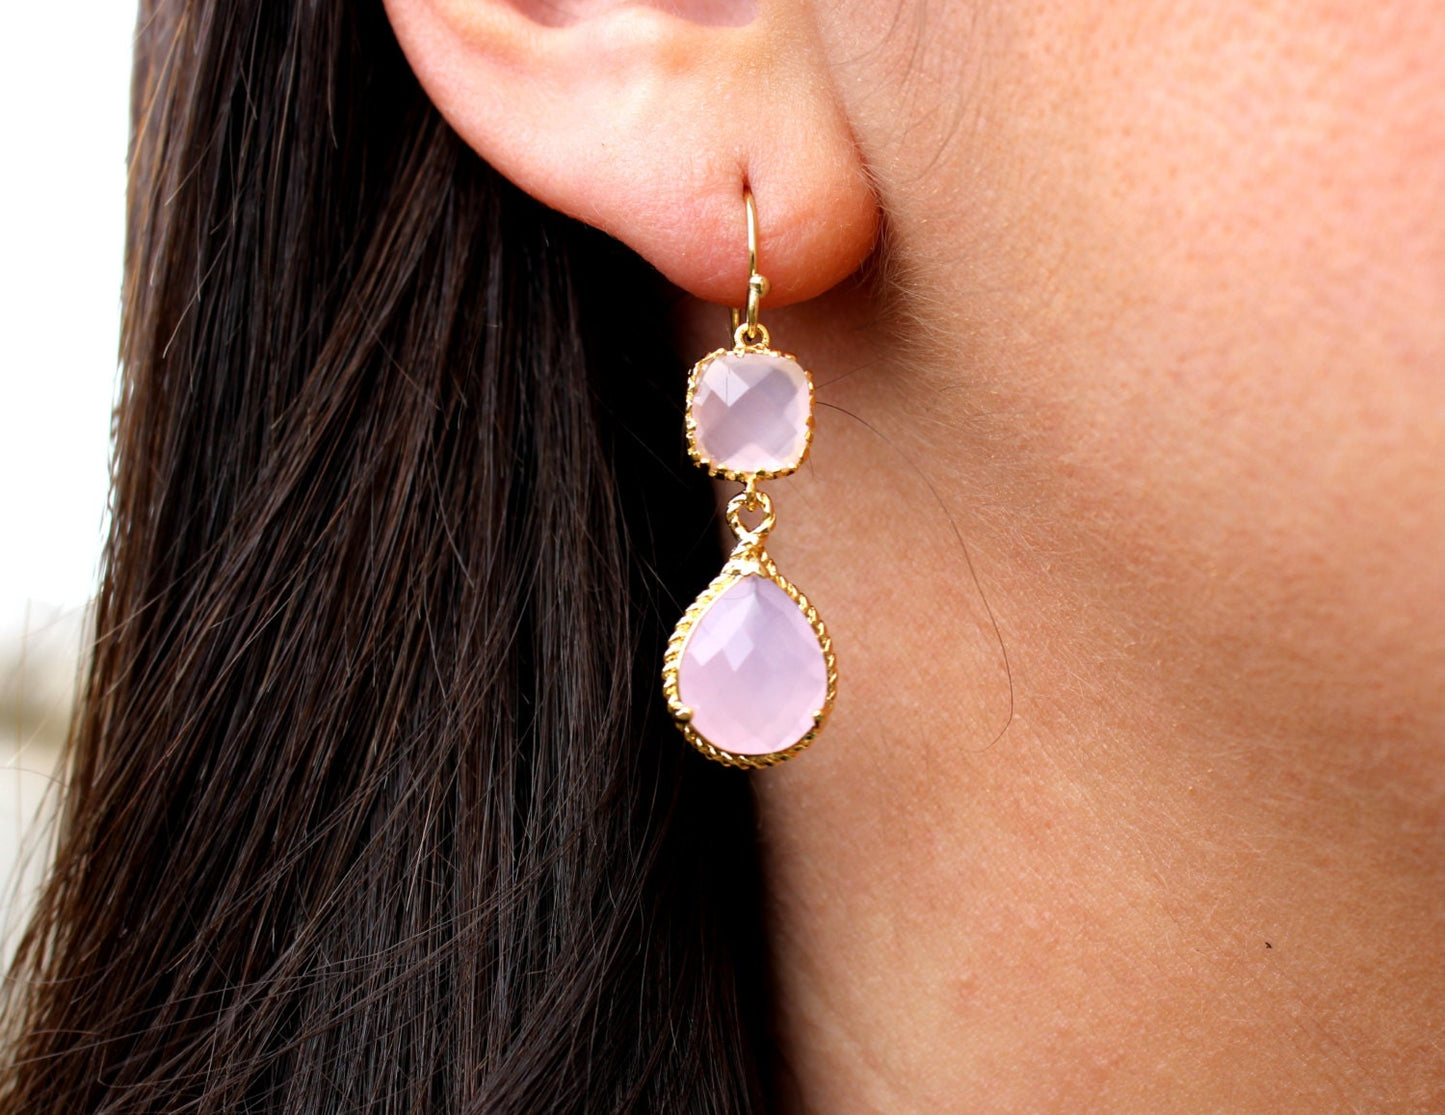 Pink Opal Earrings Gold Pink Earrings Teardrop Glass - 14k Gold Filled Earwires - Bridesmaid Earrings Wedding Earrings